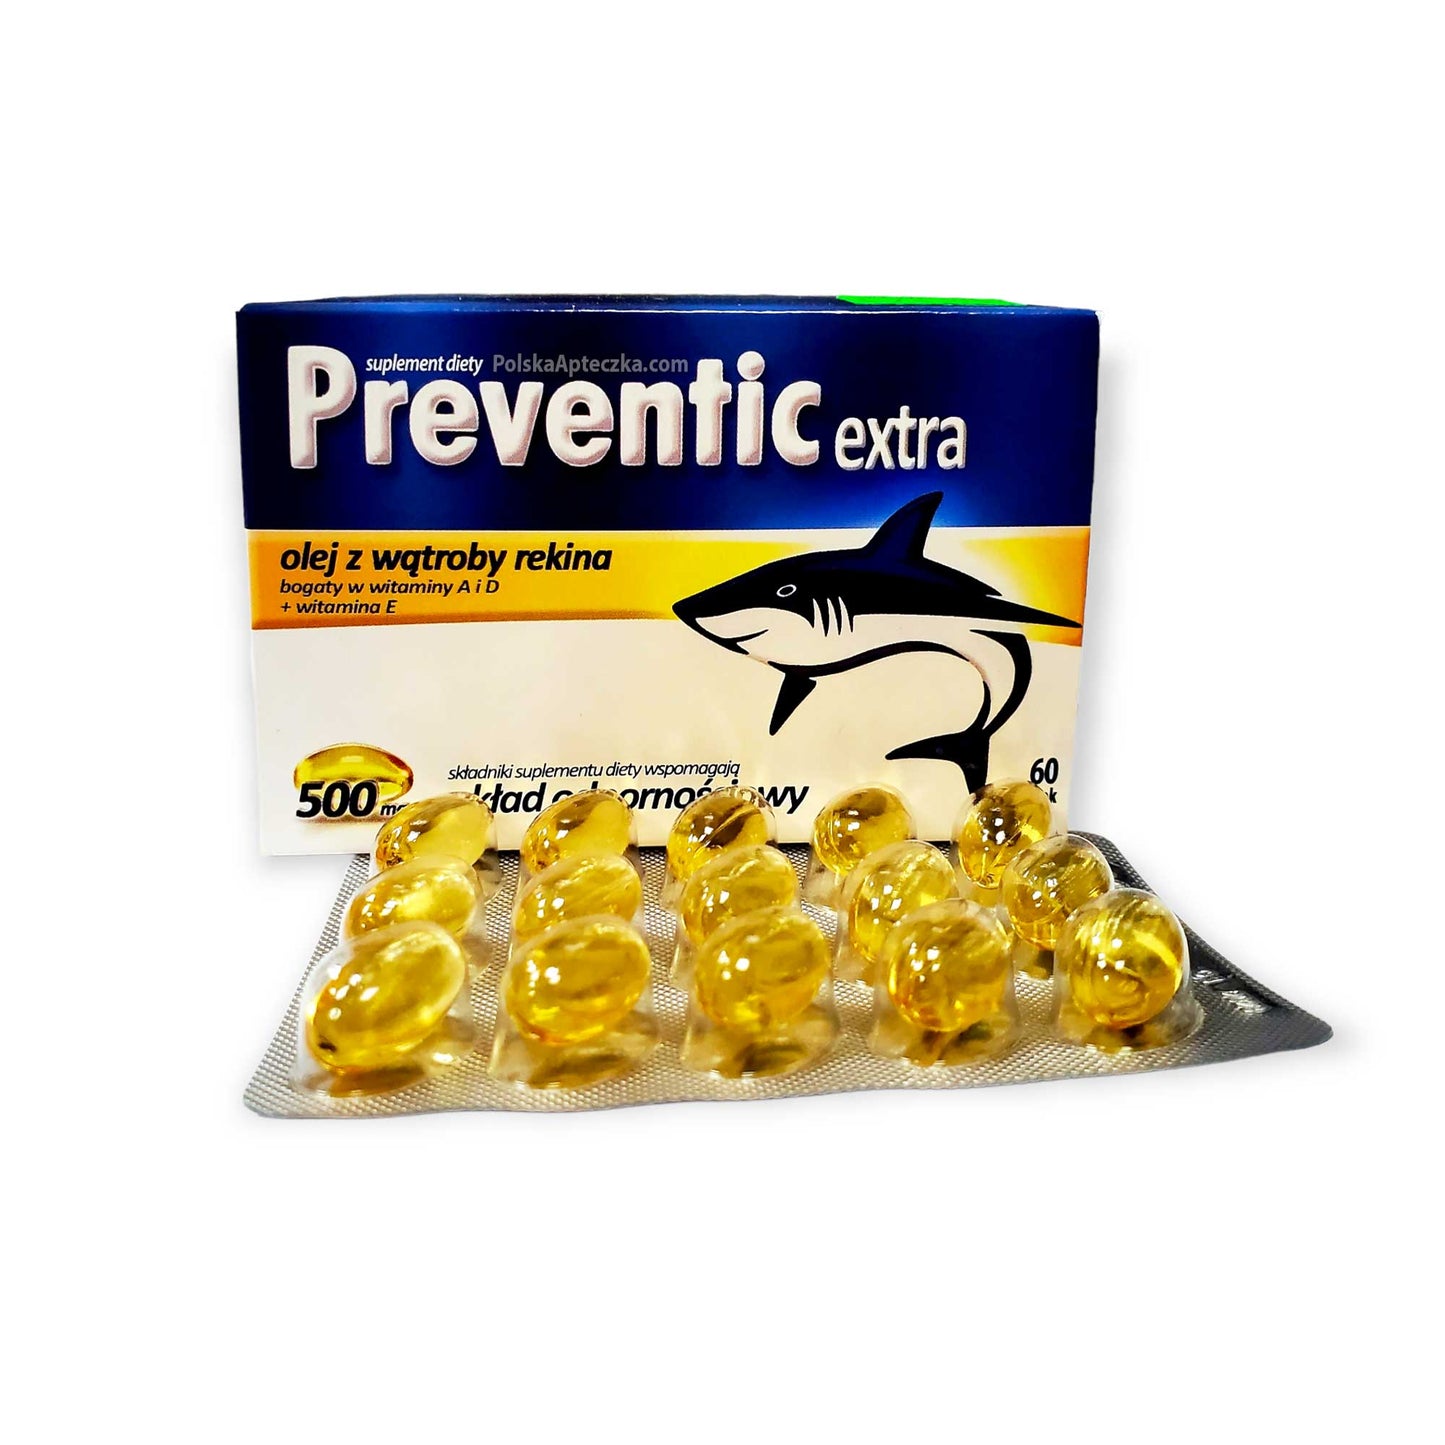 Preventic Extra 500, olej z wątroby rekina, 60  kapsułek